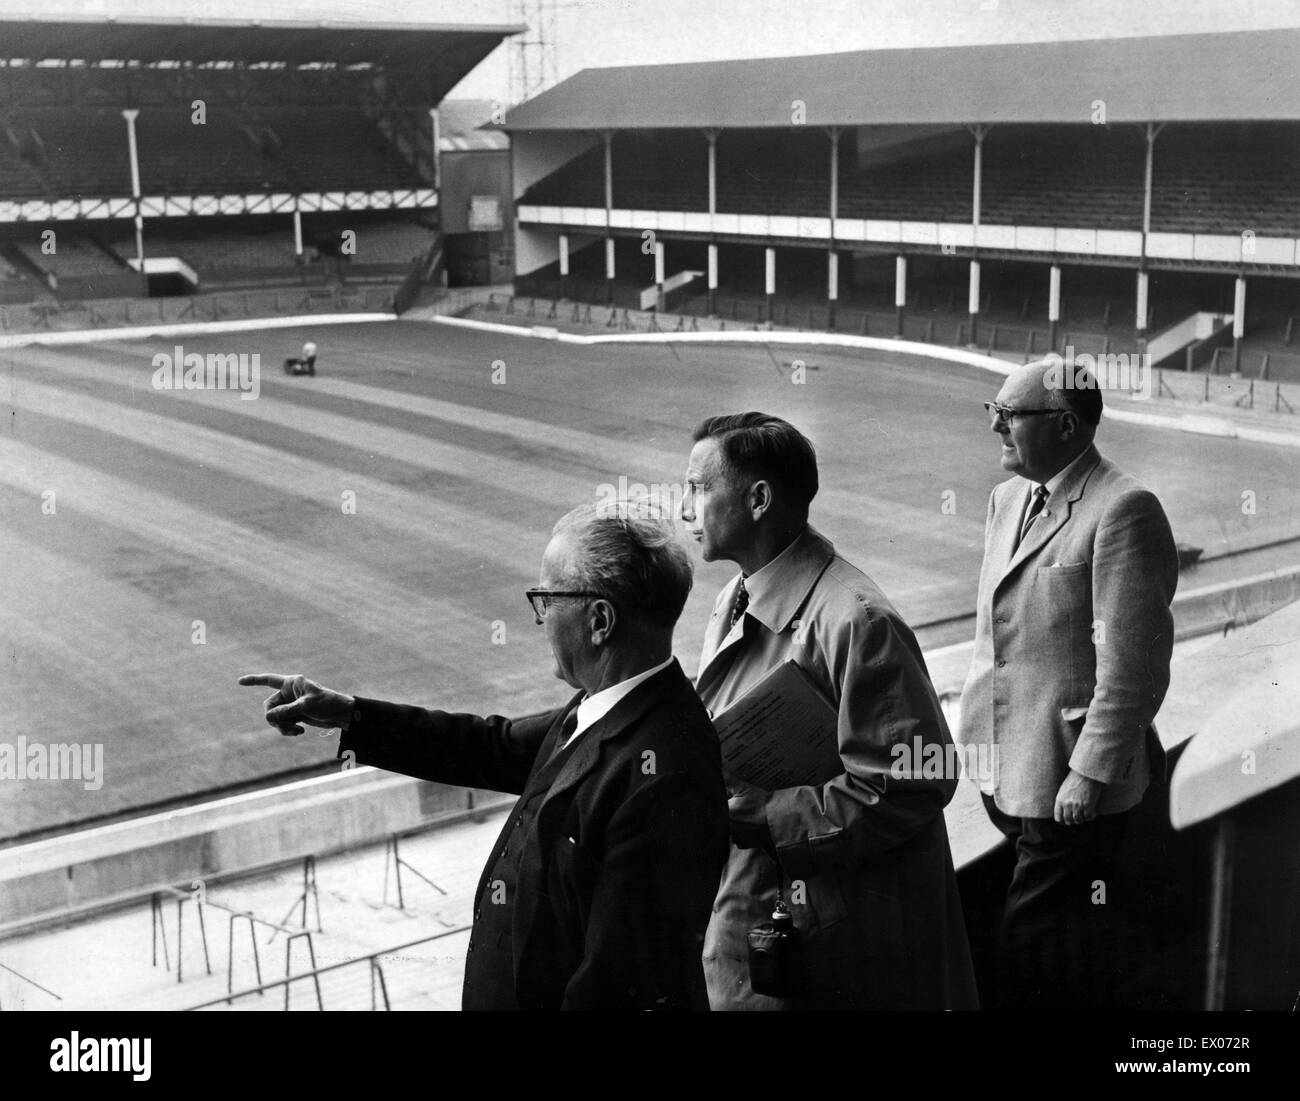 De Goodison Park, home à Everton FC, le stade de football est situé dans la région de Walton, Liverpool, Angleterre. 15 juillet 1965. John Moores, président du club, fait observer les préparatifs de la Coupe du monde des cravates à Goodison Park l'été prochain. Banque D'Images